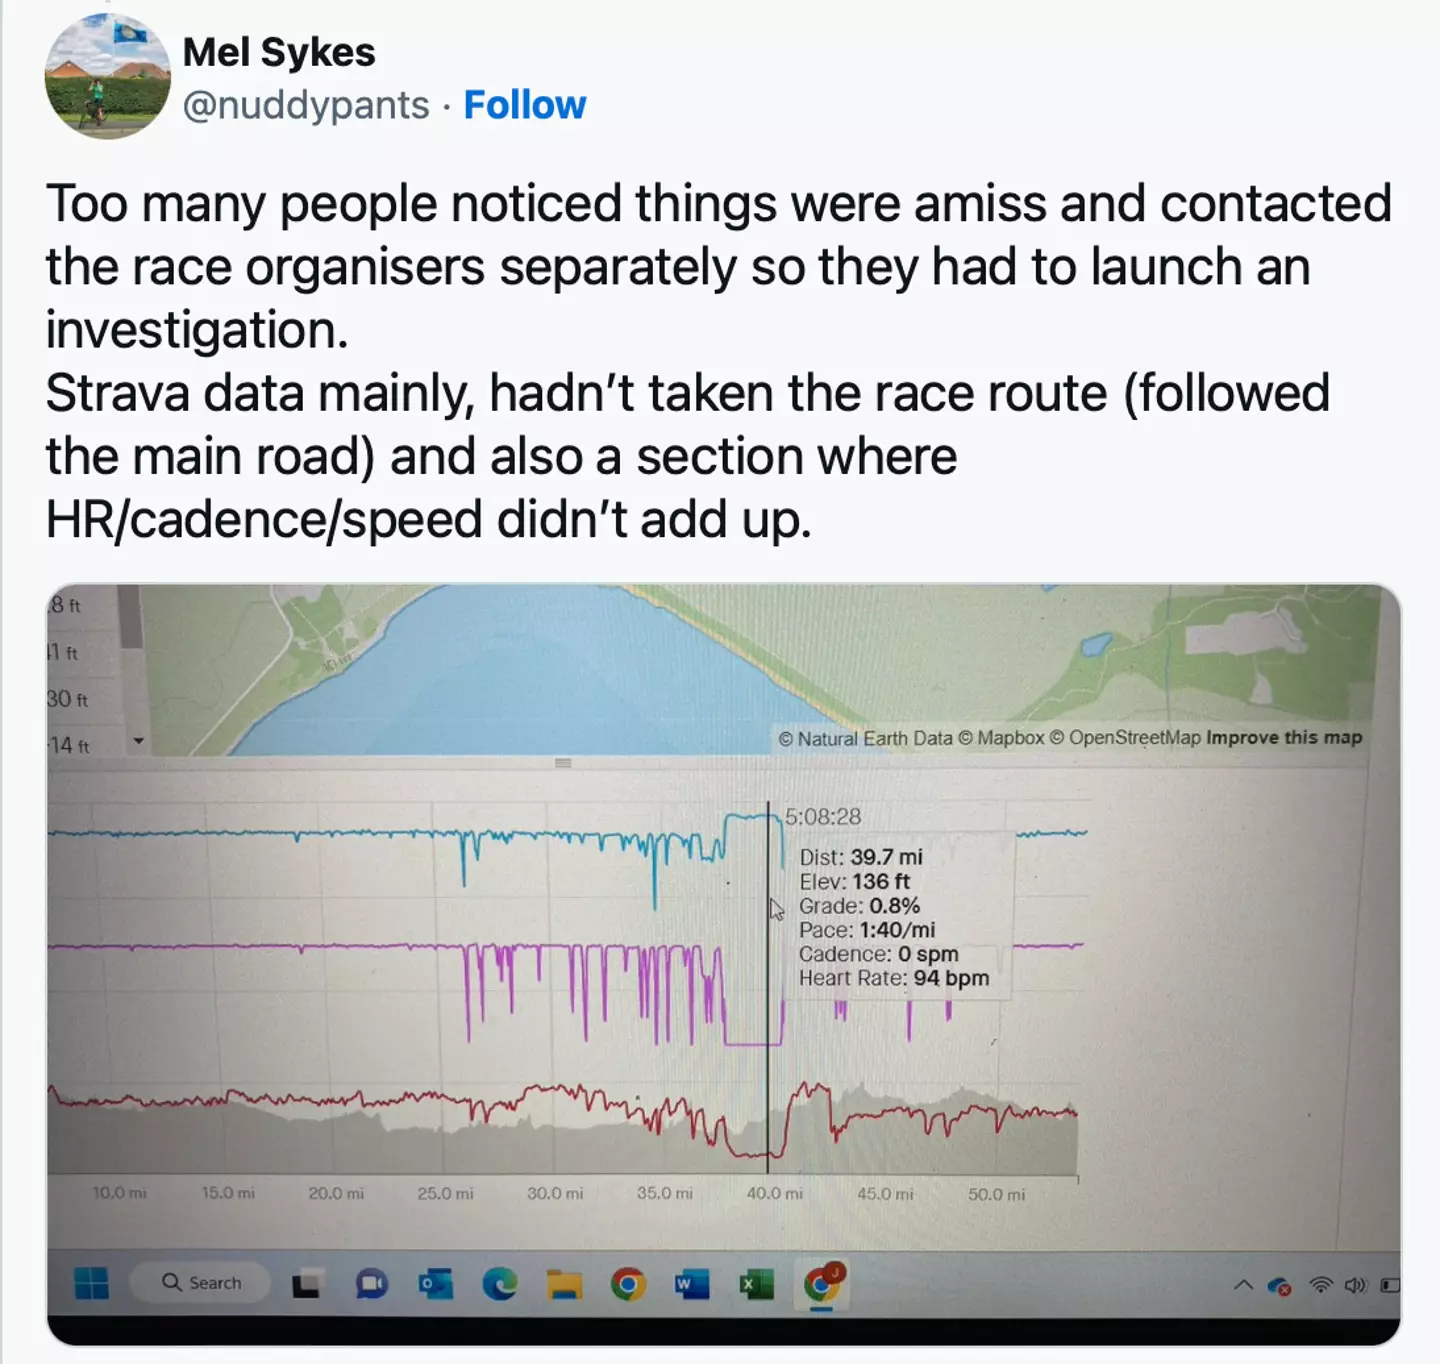 Ultra runner Mel Sykes shared the dubious data on Twitter.